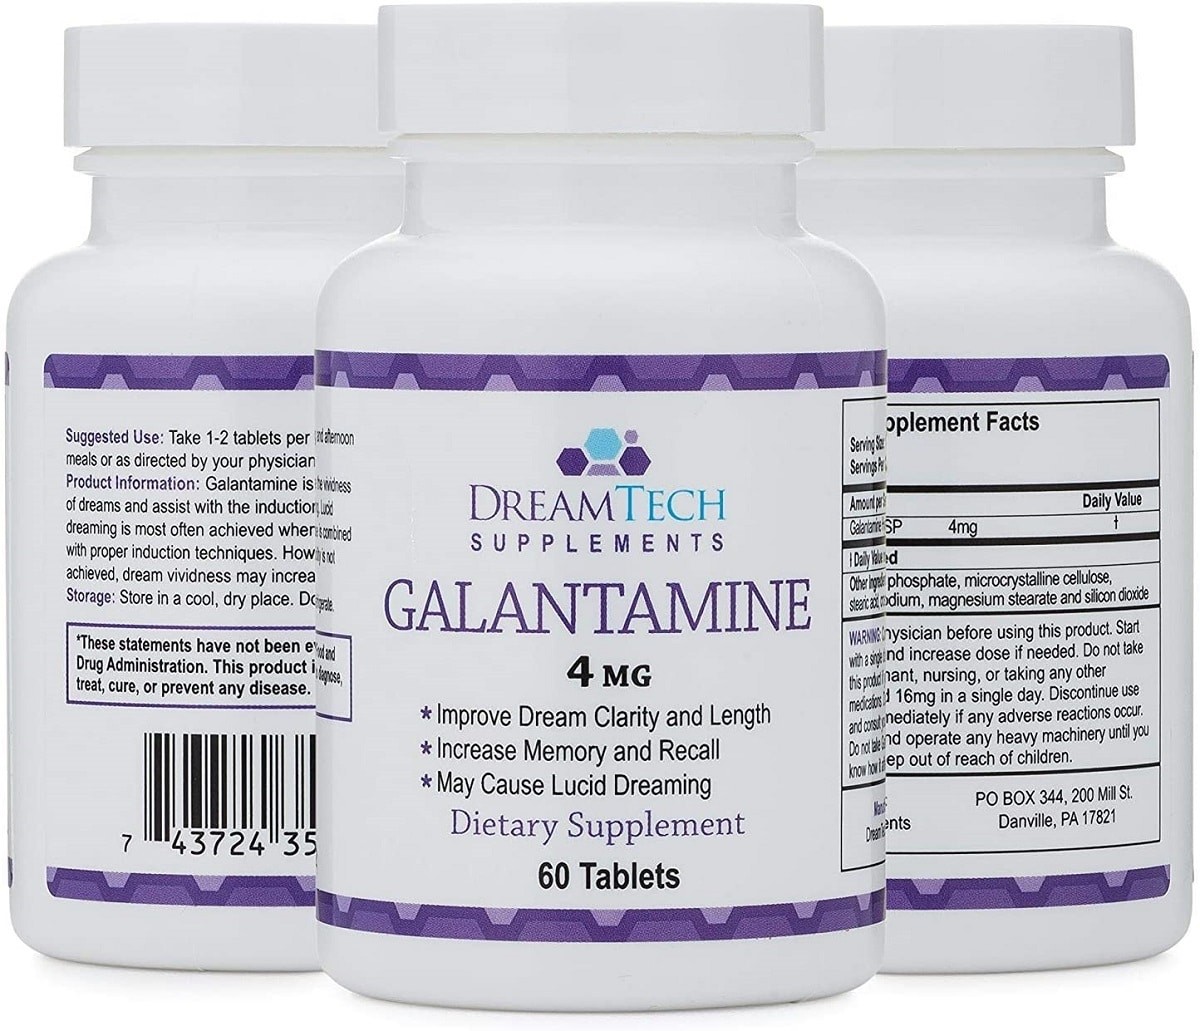 Galantamine có thể được chỉ định để điều trị các triệu chứng của bệnh Alzheimer ở mức độ nhẹ và trung bình